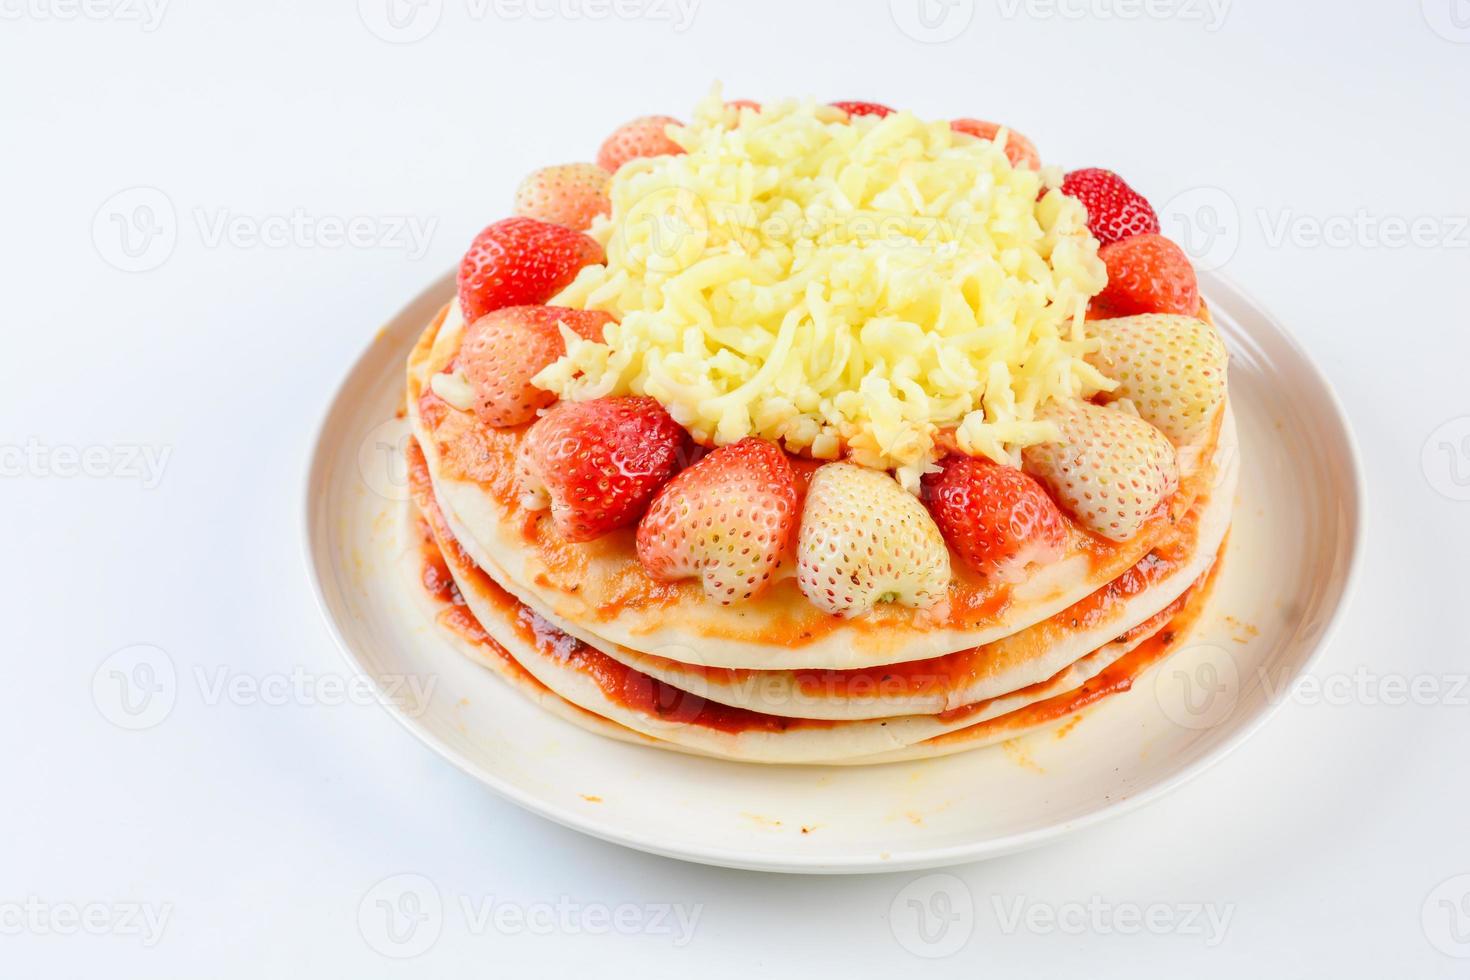 pizza aux fraises et fromages, pizza sucrée, pizza au gâteau en couches pn fond blanc photo